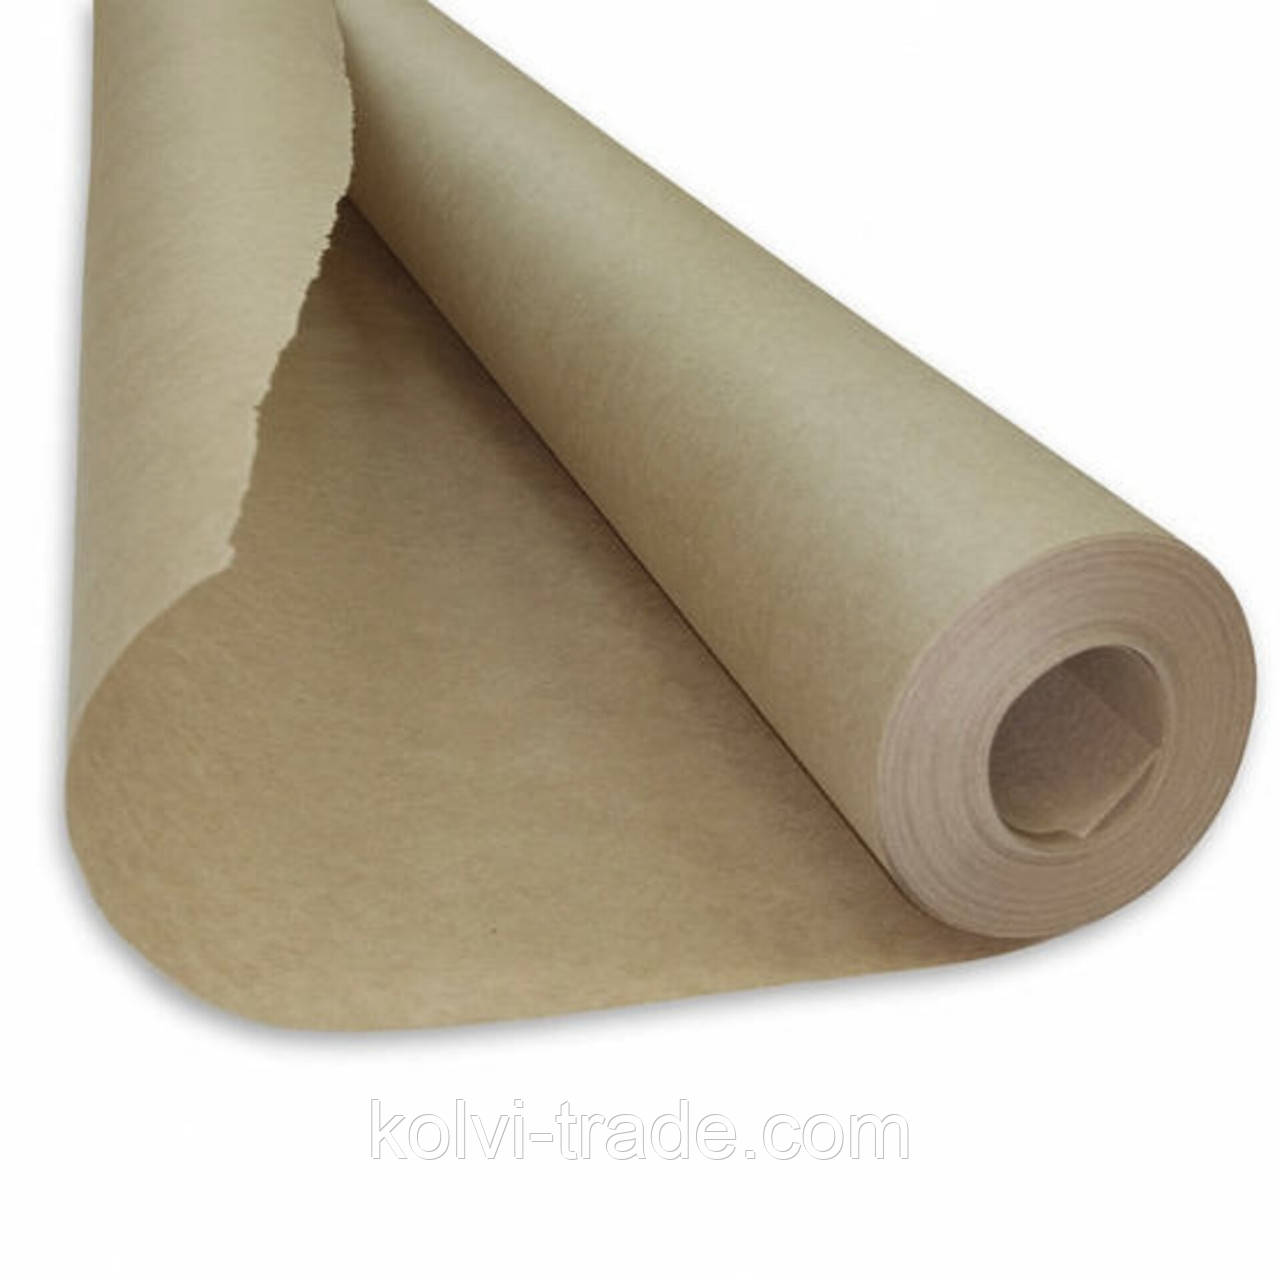 Рулонний папір для викрійок, 1500мм, щільністю 60 г/м2, вага 18кг (P/К-1.5/200-60/18-2) Колві